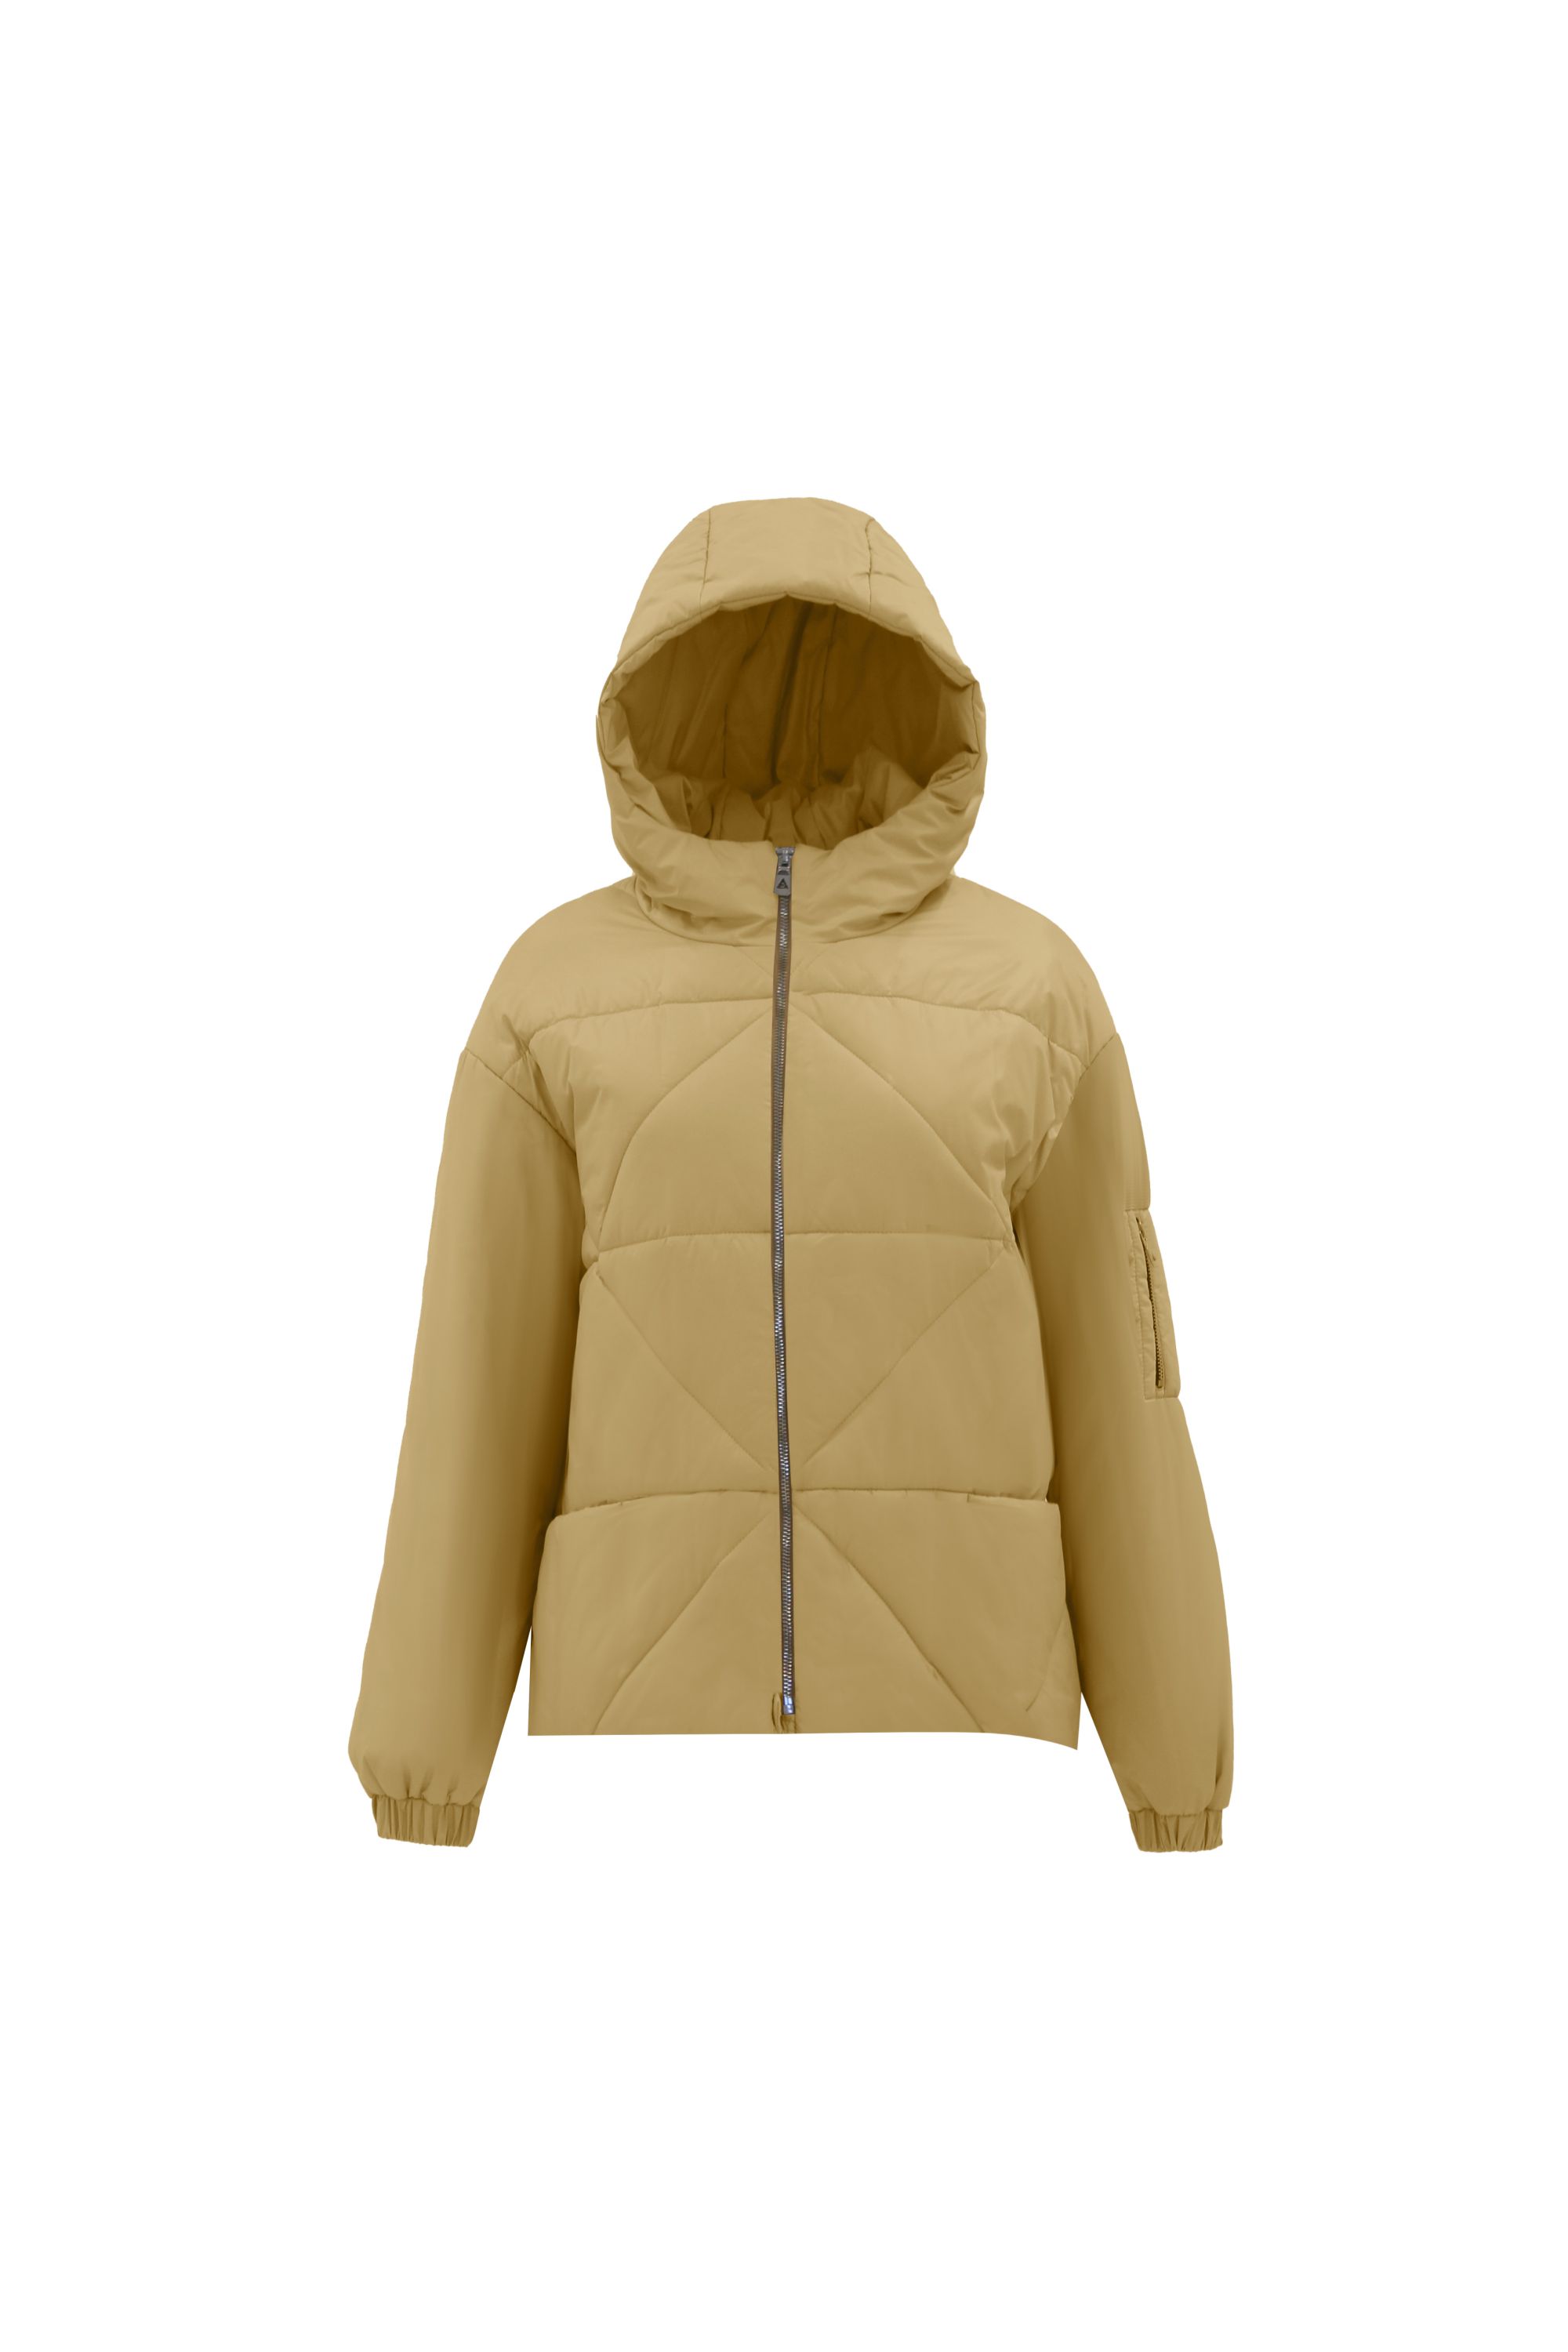 Куртка женская плащевая утепленная 4-12065-1